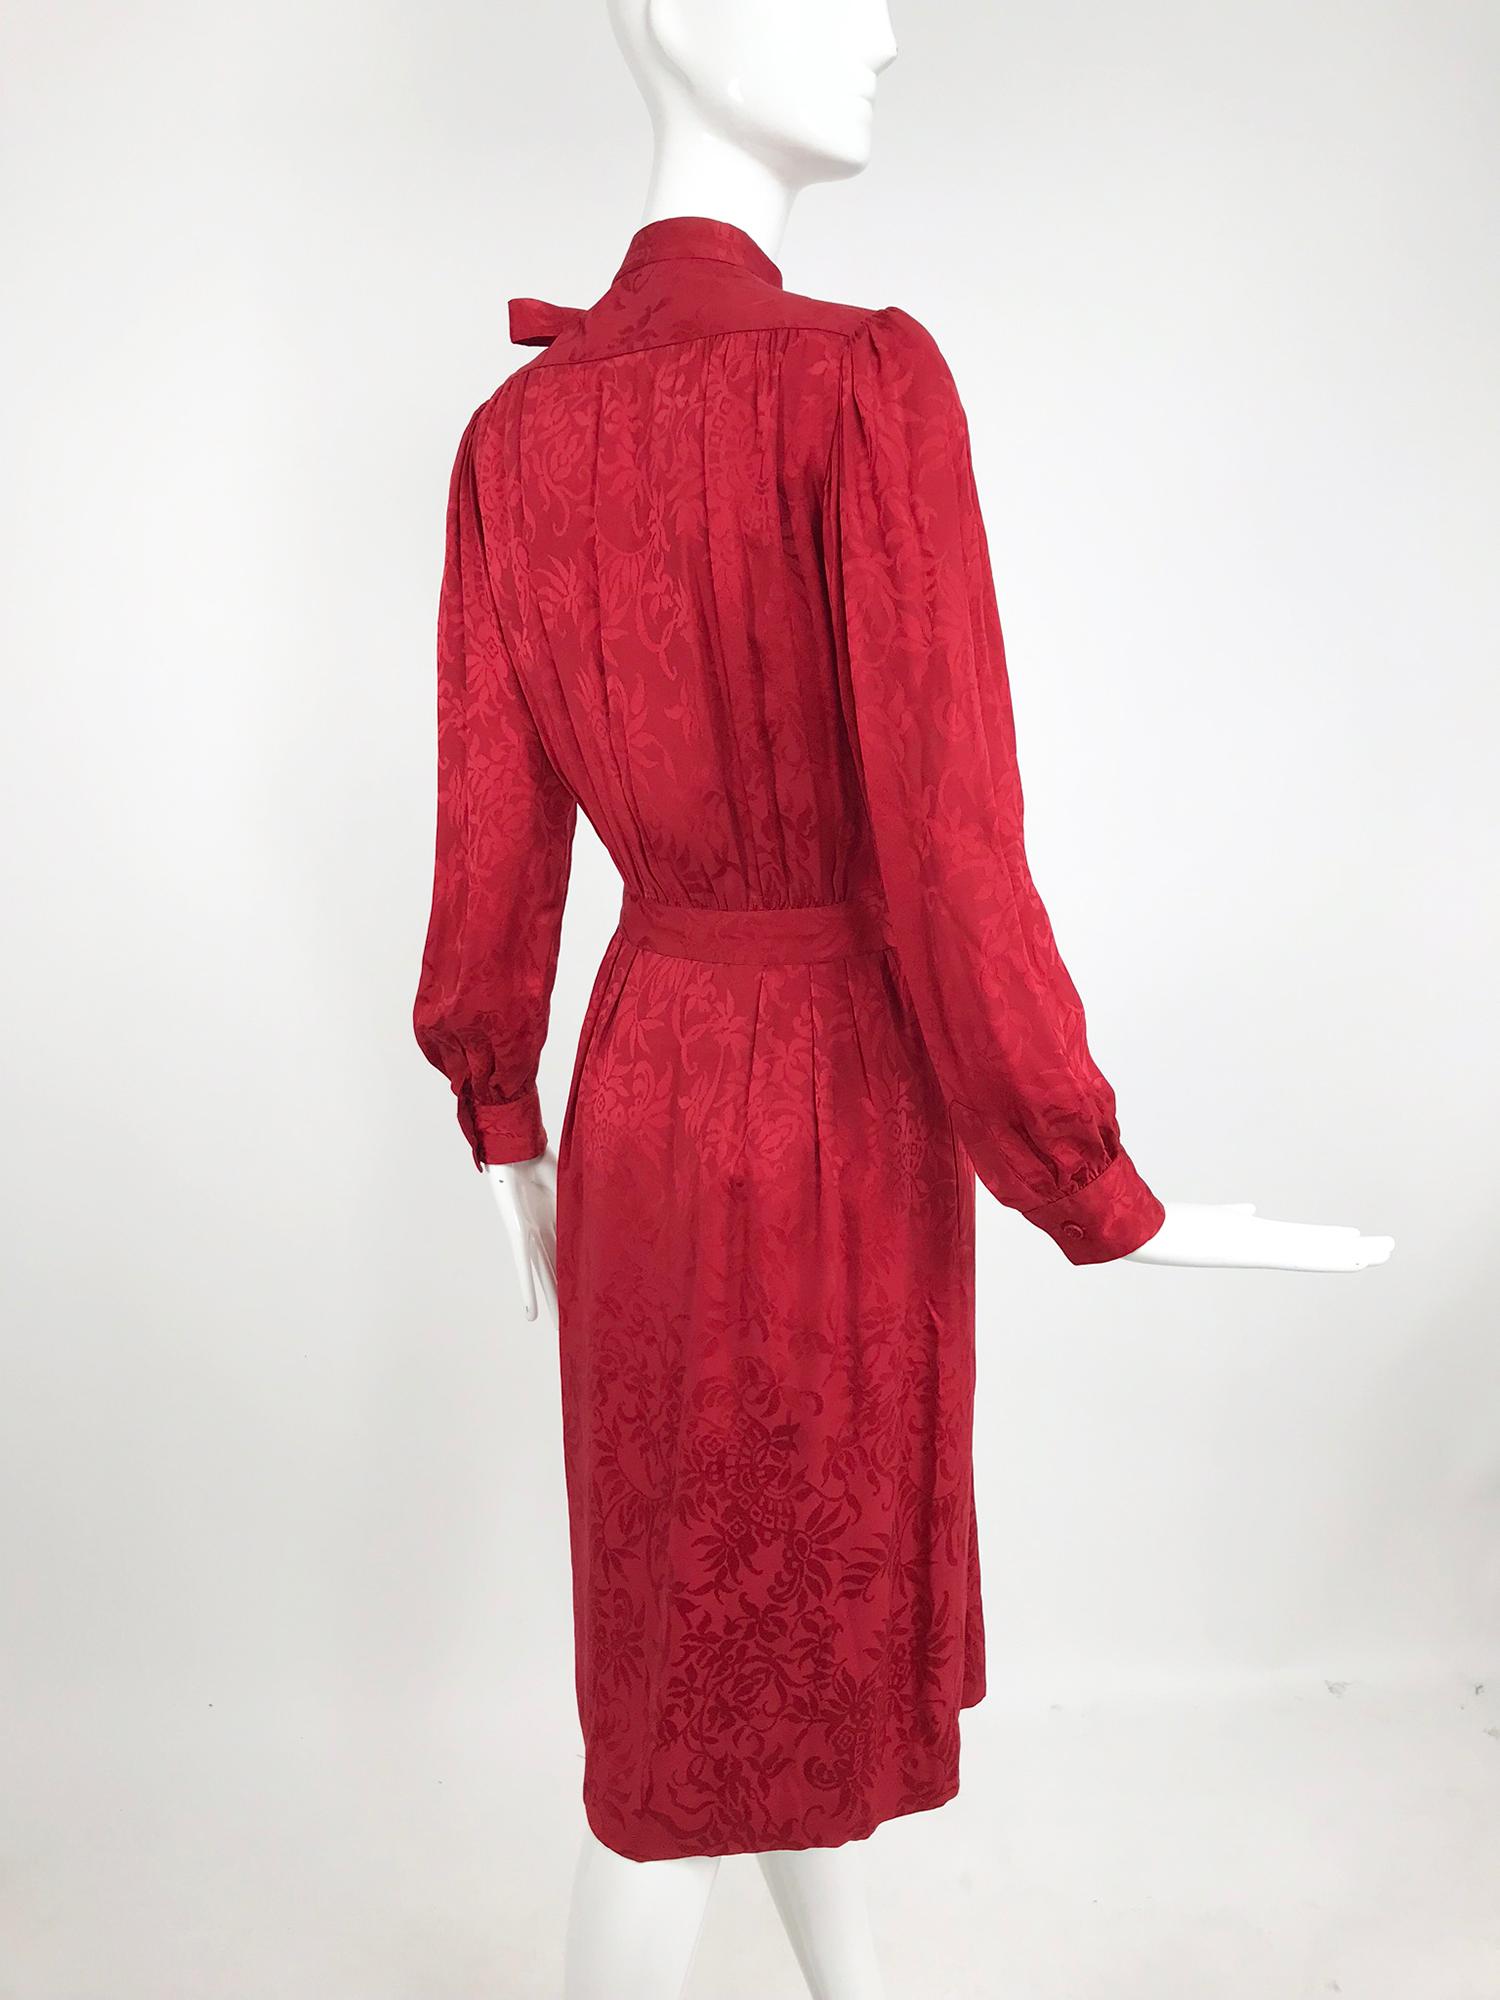 Yves Saint Laurent - Robe en jacquard de soie rouge avec nœud papillon, années 1970 5